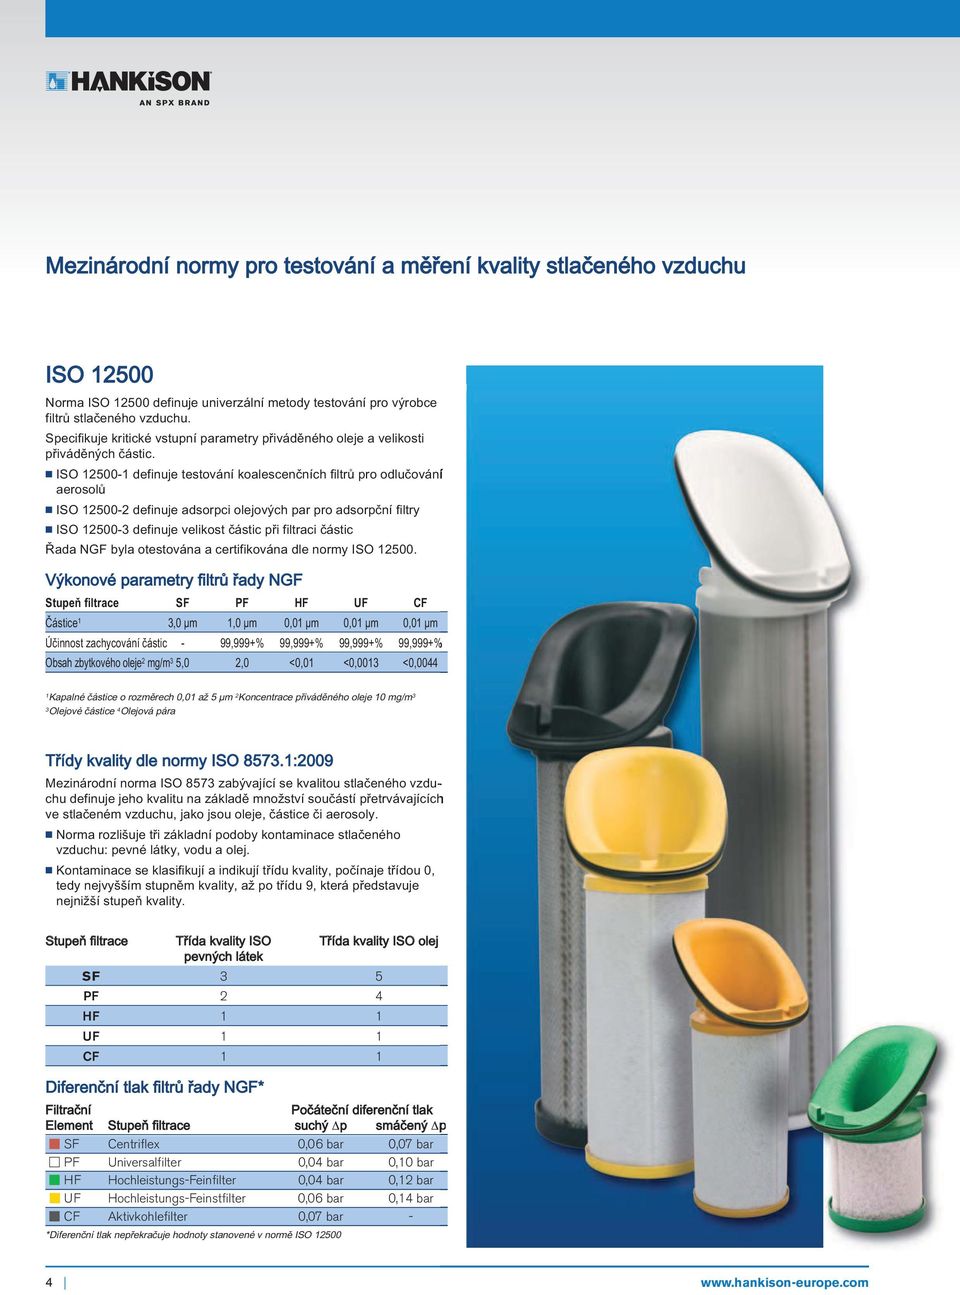 ISO 12500-1 definuje testování koalescenčních filtrů pro odlučování aerosolů ISO 12500-2 definuje adsorpci olejových par pro adsorpční filtry ISO 12500-3 definuje velikost částic při filtraci částic